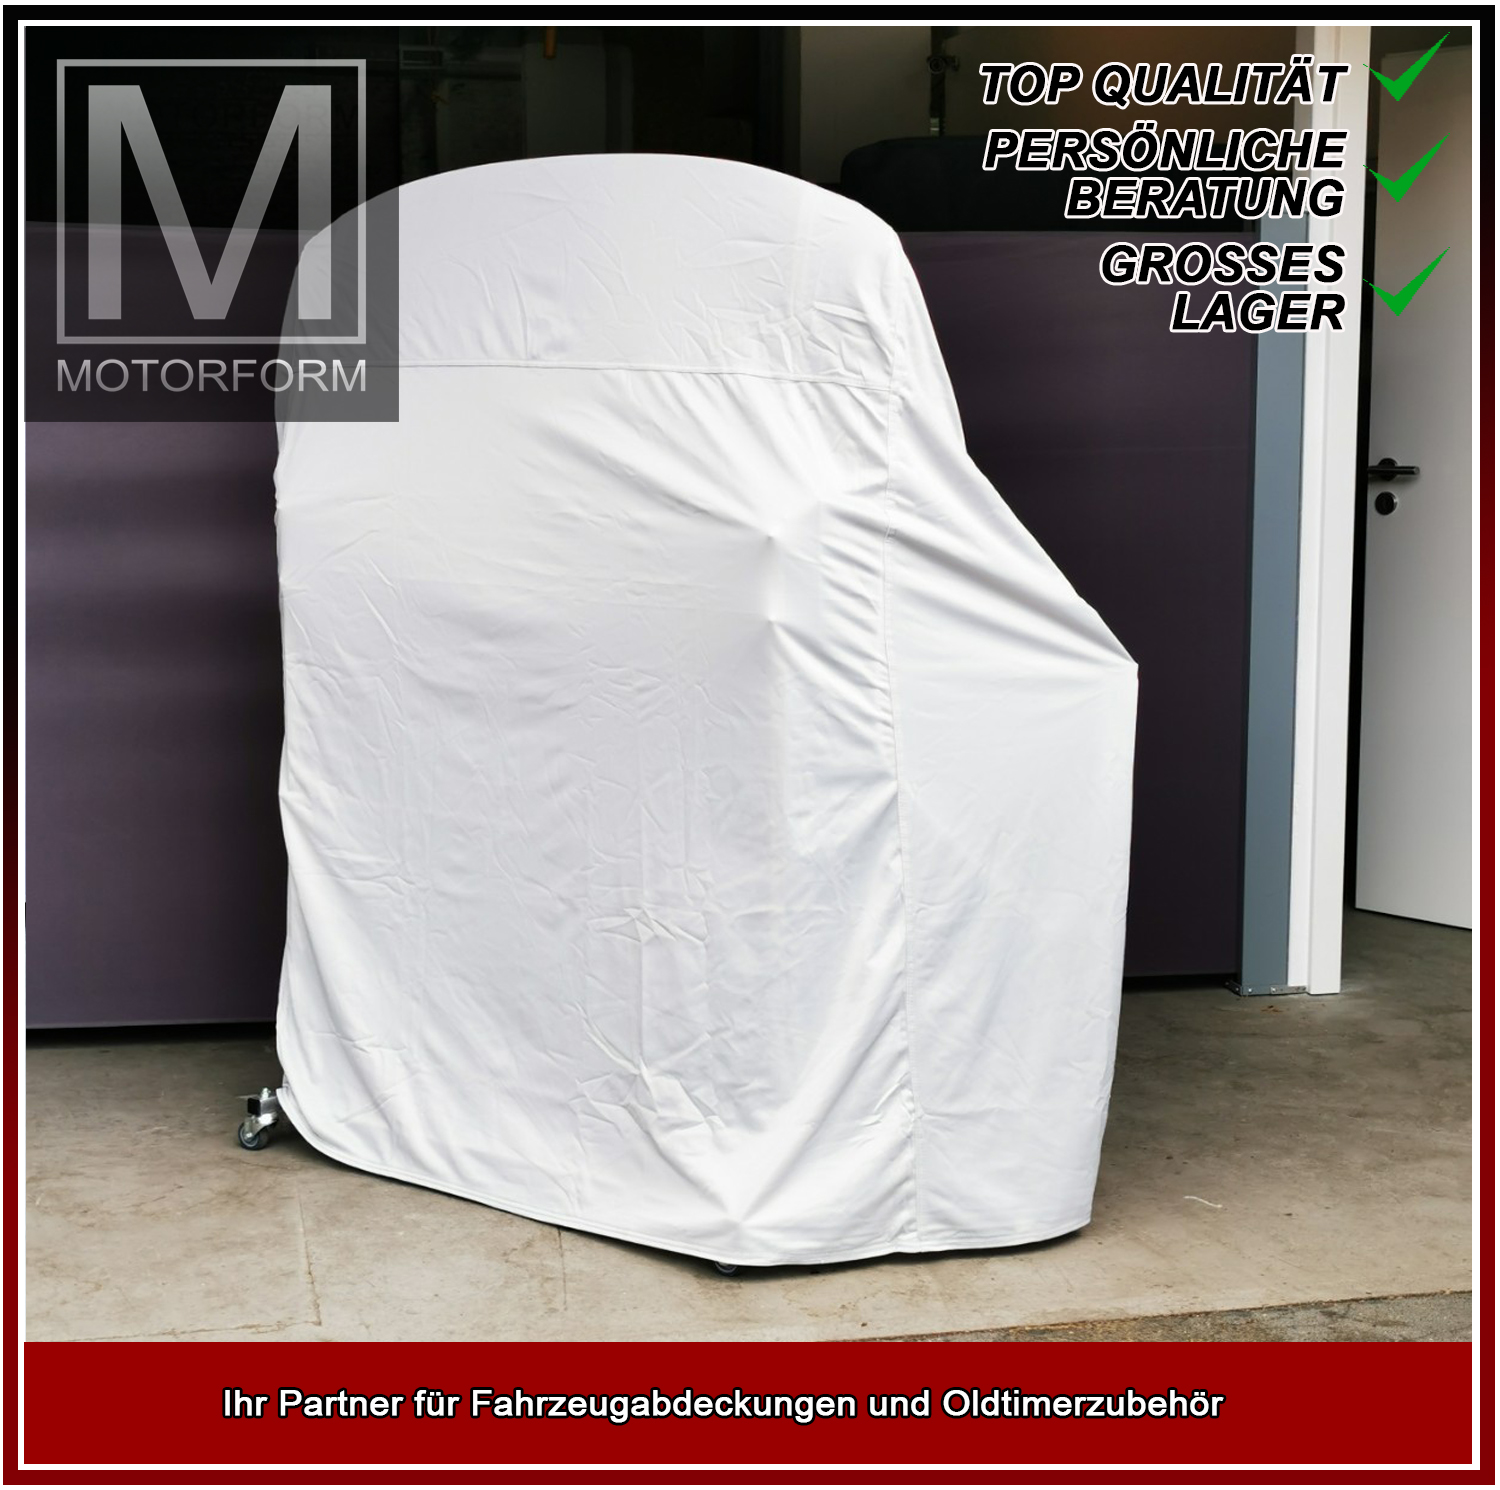 Silver Series Hardtop-Cover for Hardtop-Cover Mazda MX-5 NA (198